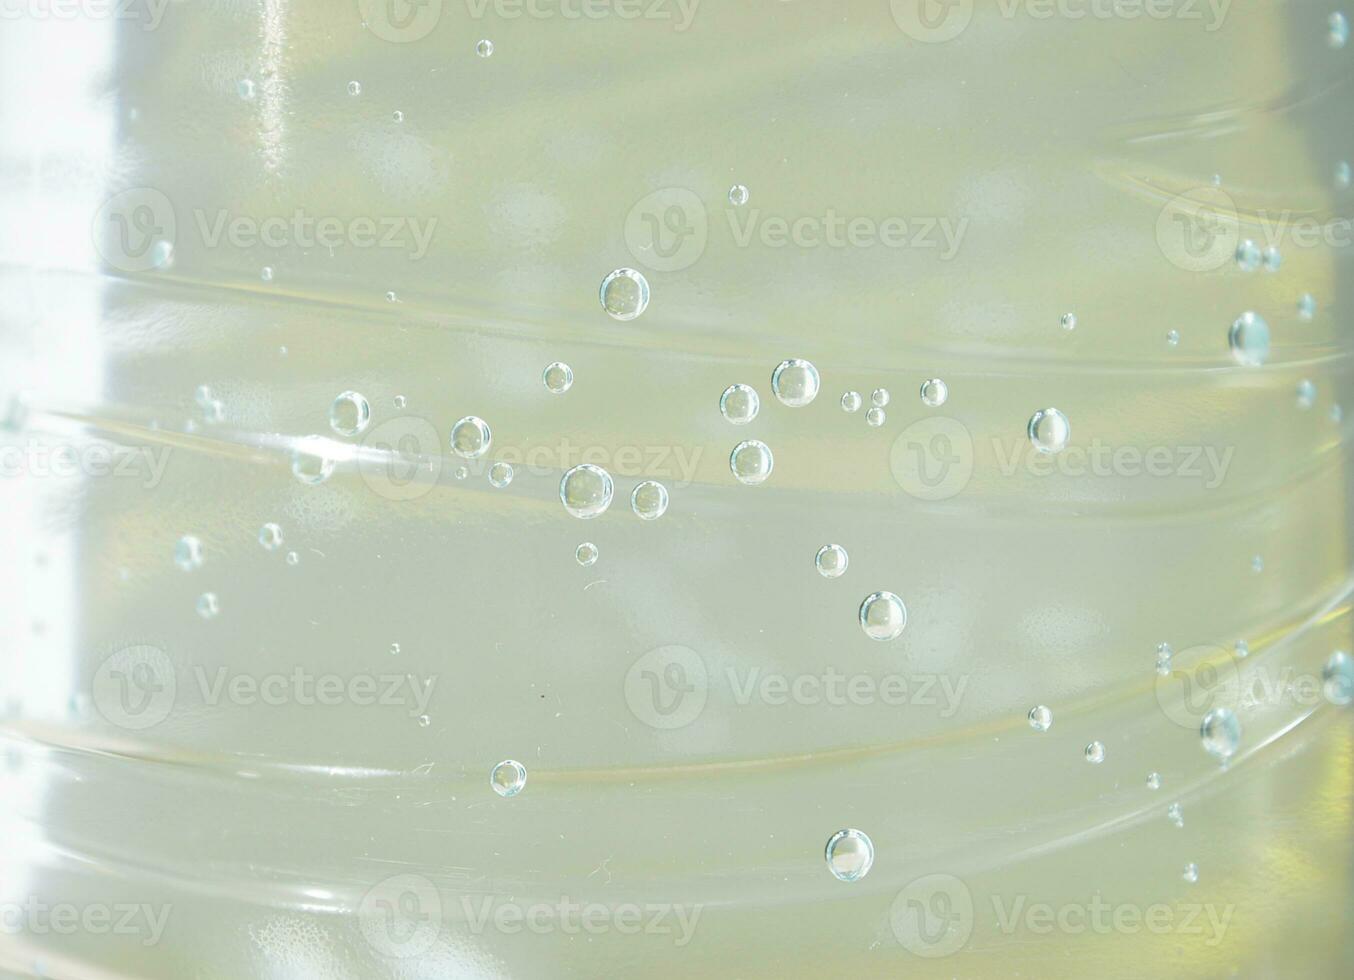 water met macro bubbels van gas. nat abstract kleur achtergrond met vloeistof transparant drinken in plastic fles. vers en verkoudheid laten vallen foto backdrop voor poster, banier, ansichtkaart, folder.